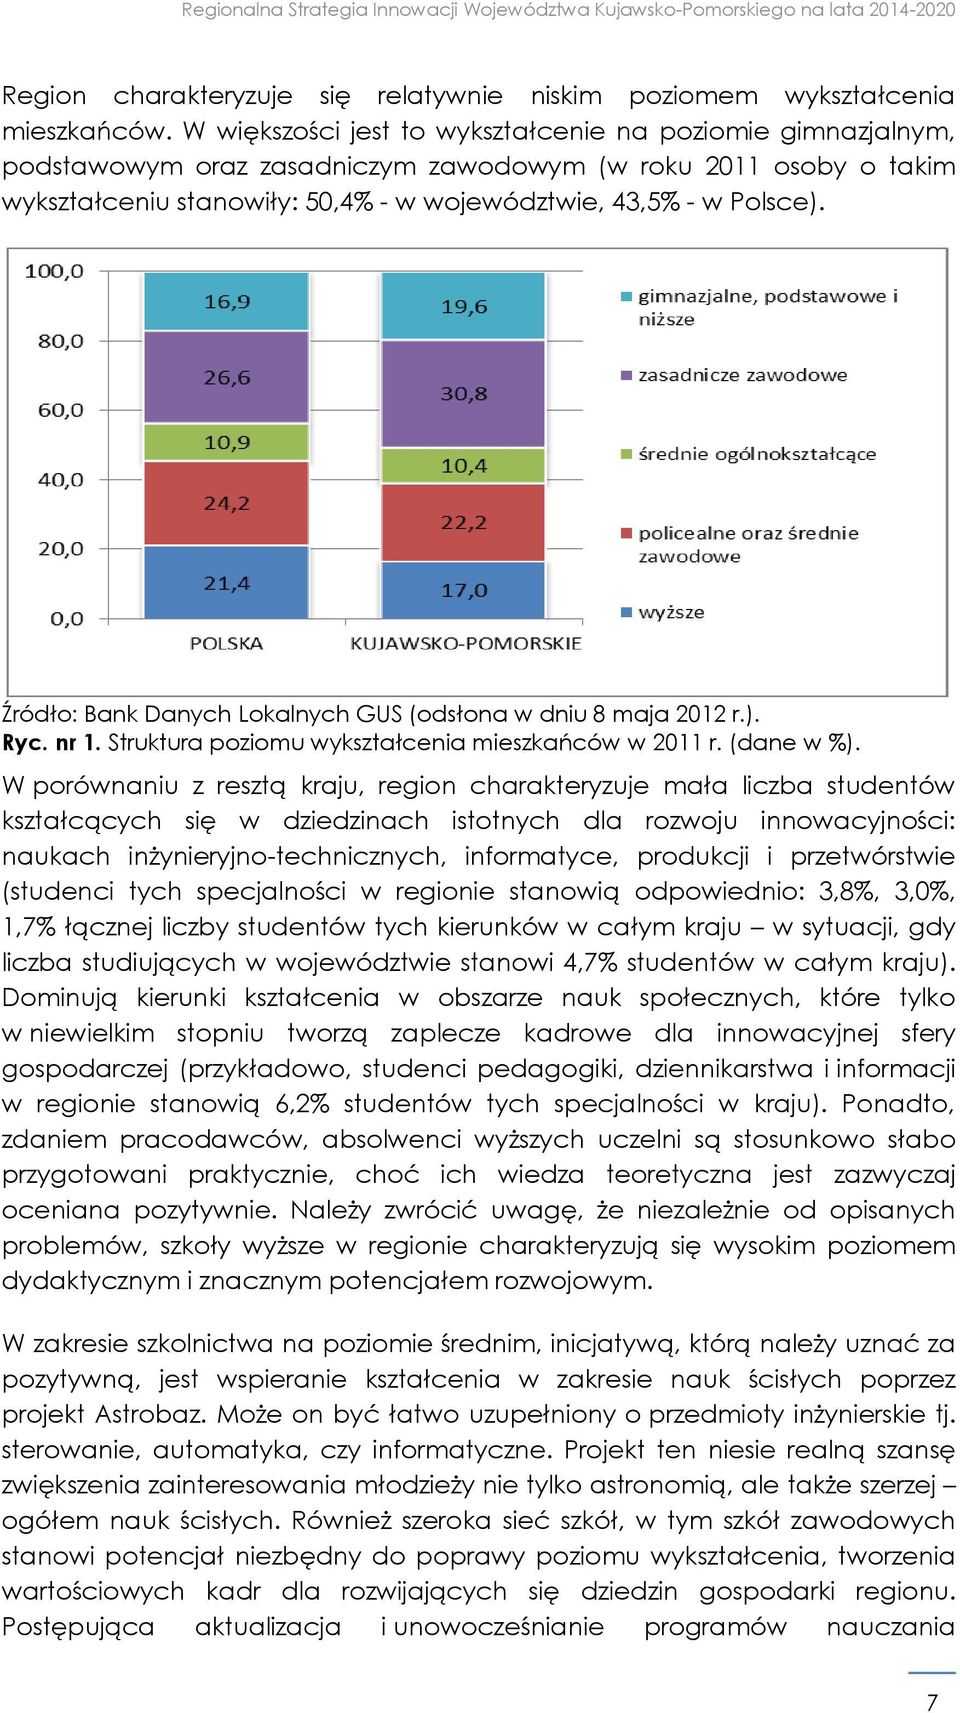 Źródło: Bank Danych Lokalnych GUS (odsłona w dniu 8 maja 2012 r.). Ryc. nr 1. Struktura poziomu wykształcenia mieszkańców w 2011 r. (dane w %).